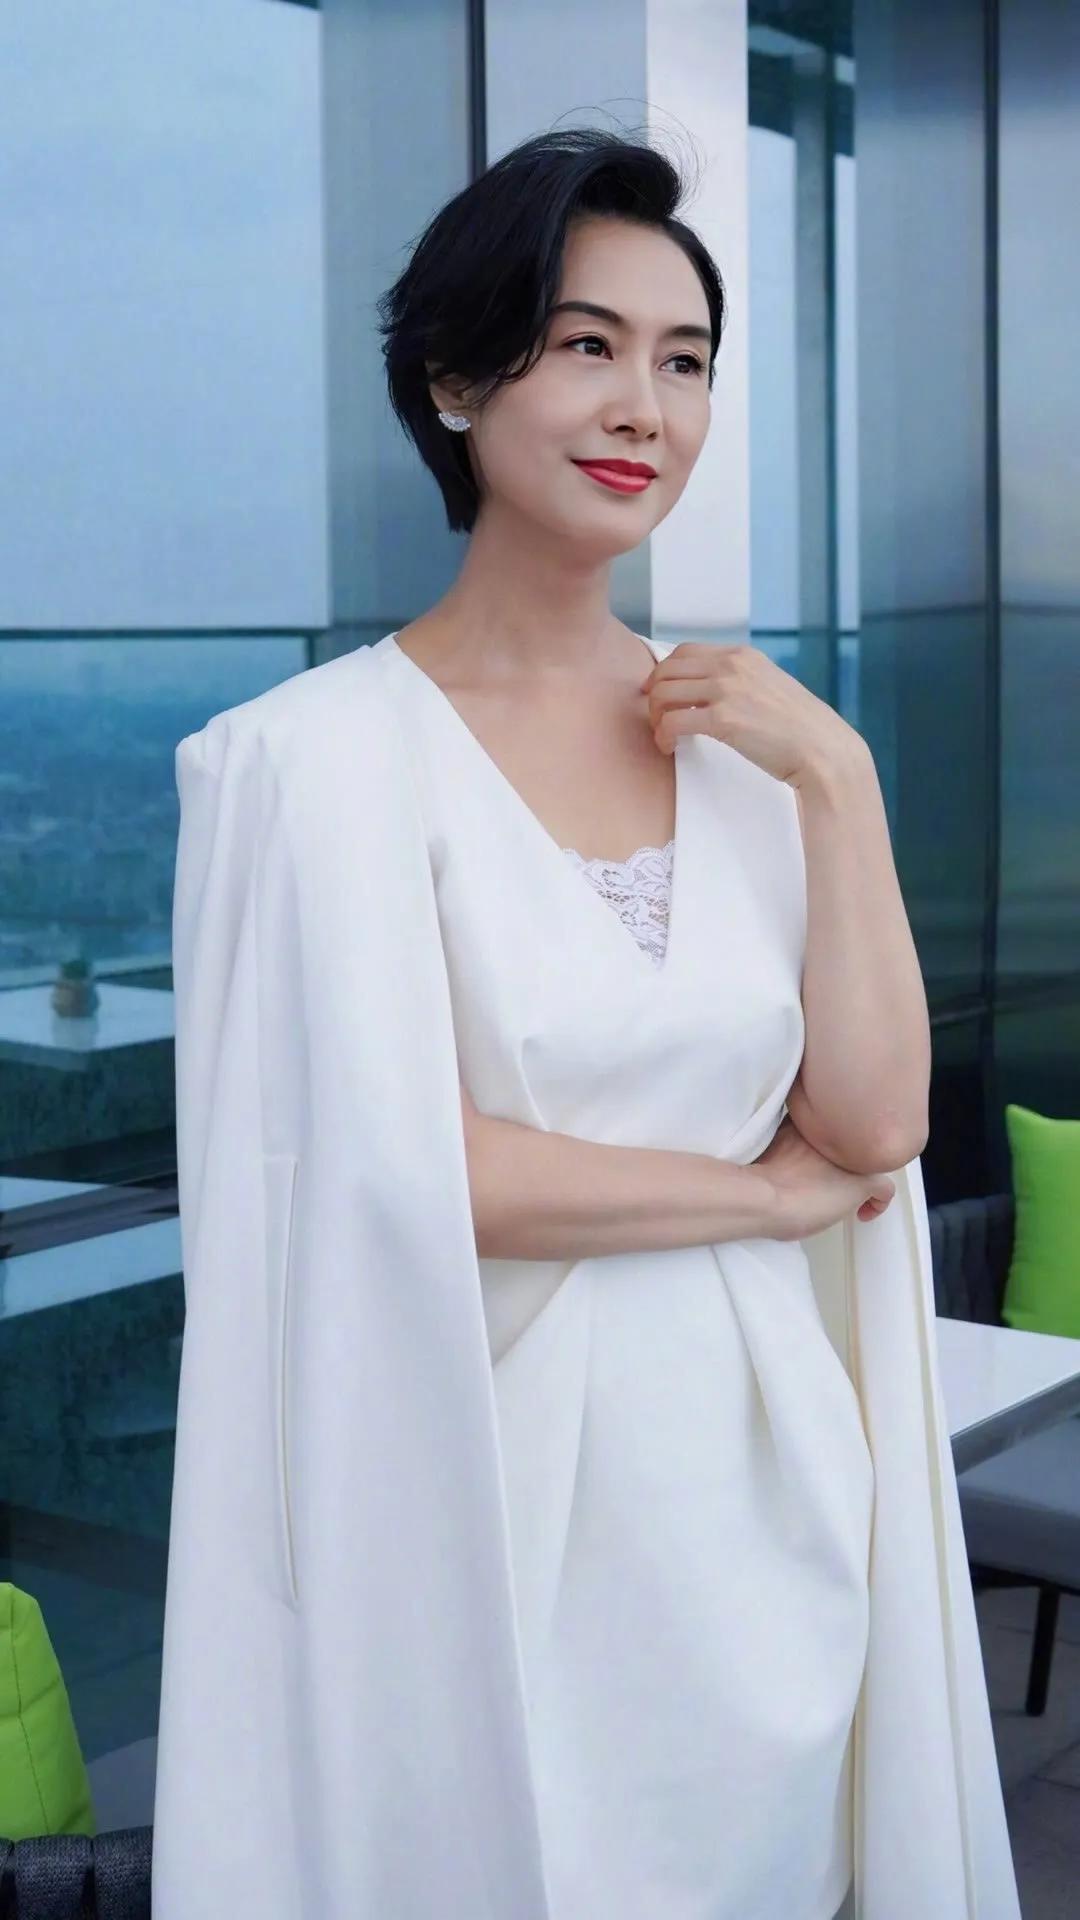 朱茵壁纸朱茵饰演的紫霞仙子是最经典的角色